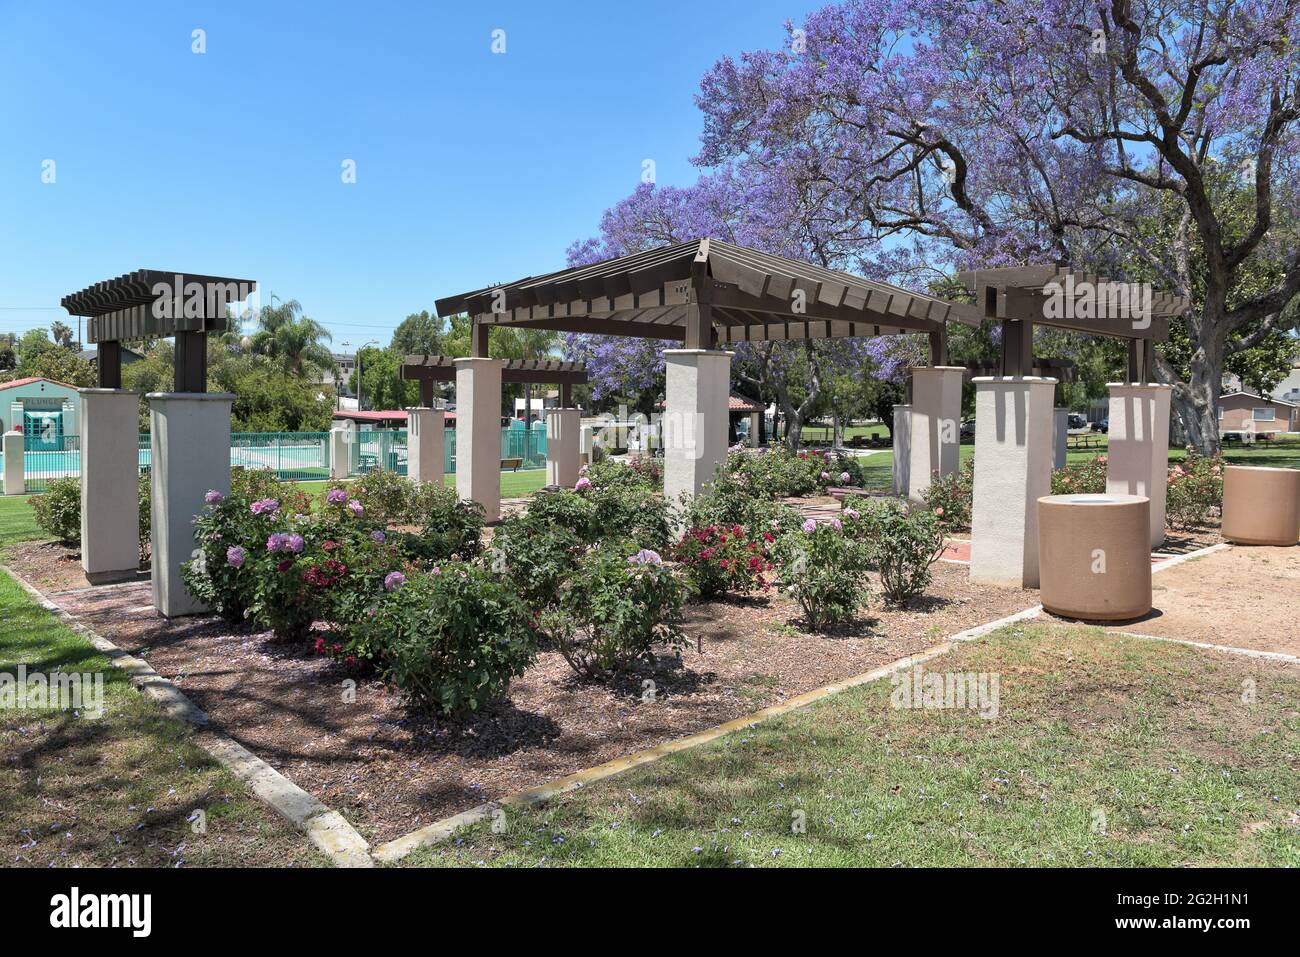 BREA, KALIFORNIEN - 9 JUN 2021: Der Rosengarten mit dem Sprung in den Hintergrund im City Hall Park. Stockfoto